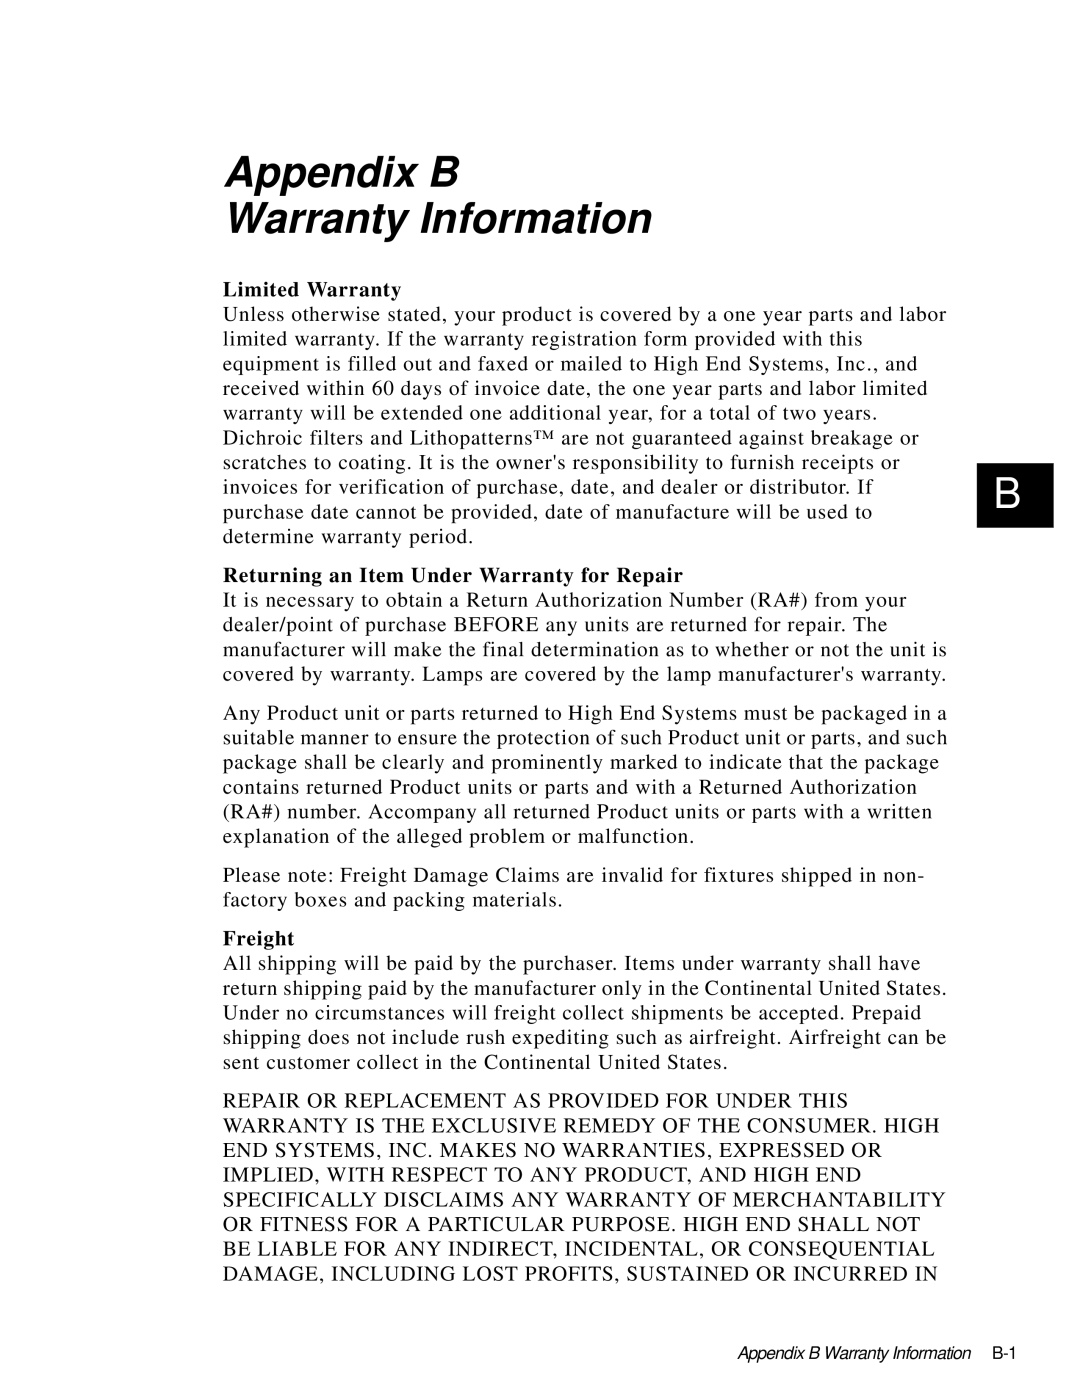 High End Systems AF1000 user manual Appendix B Warranty Information 